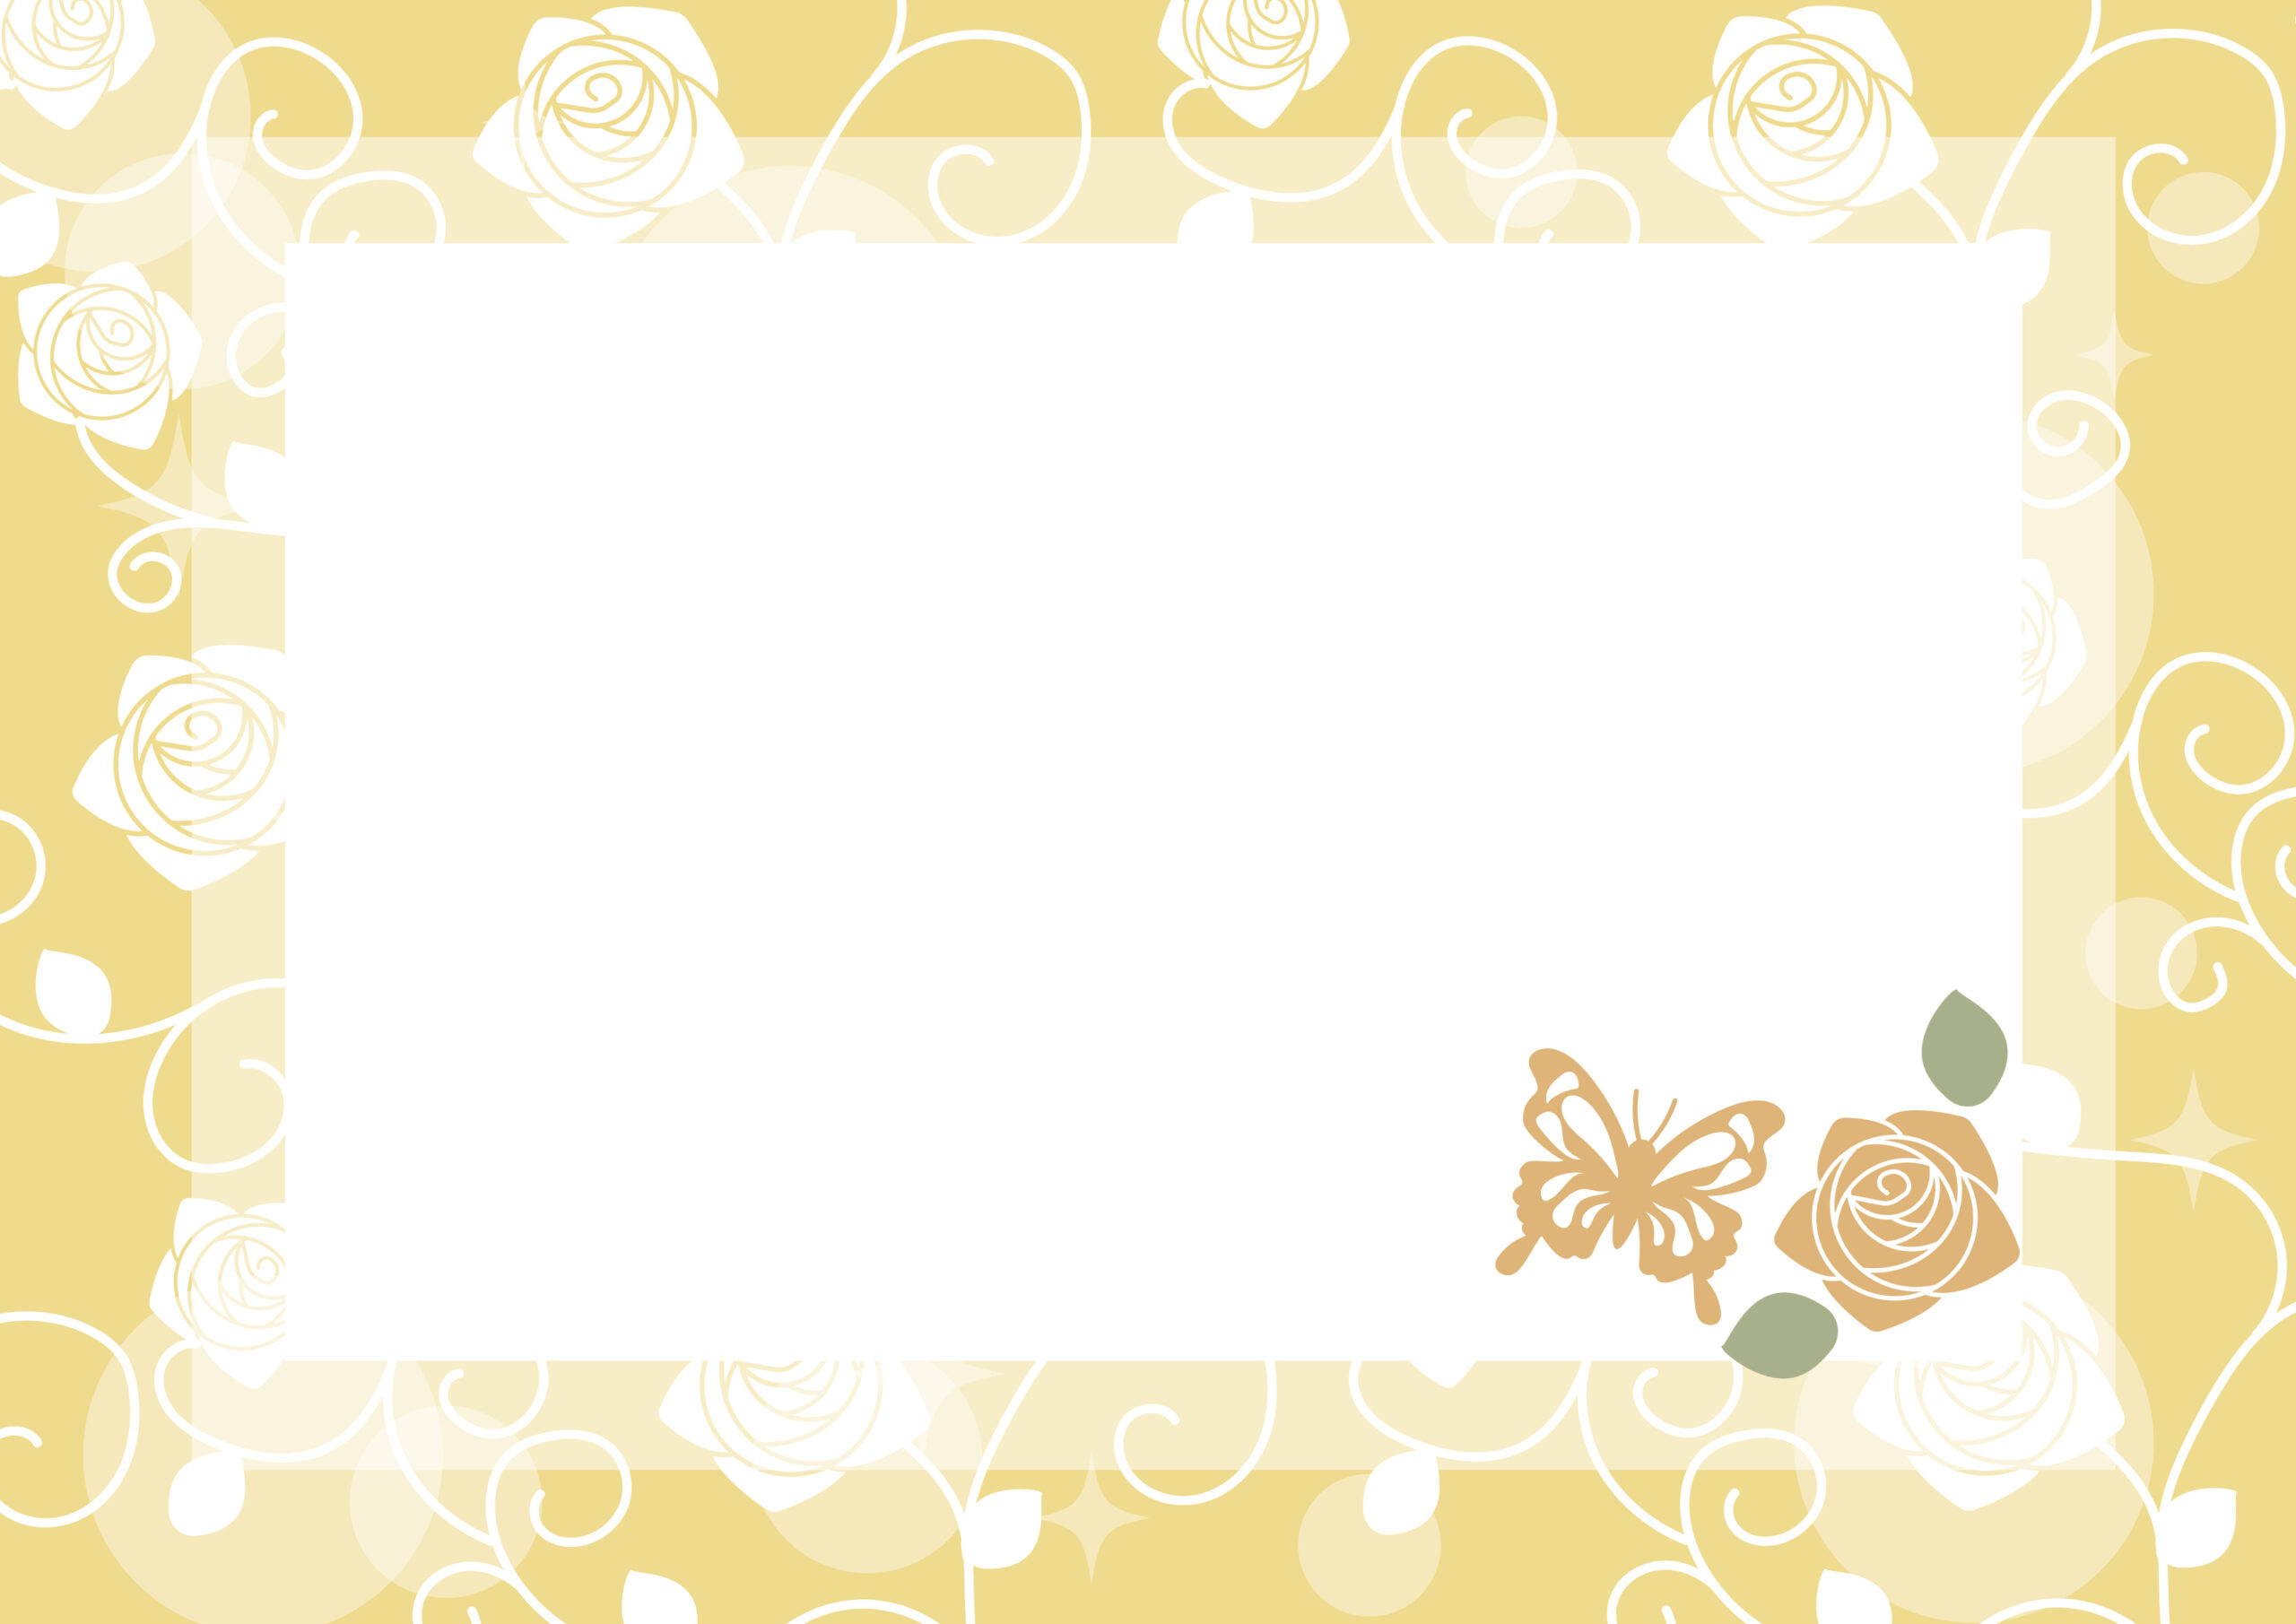 結婚式やパーティーの招待状や案内状の飾り枠に使いやすいデザインのおしゃれなフレーム素材で、バラの花や蝶々のイラストが描かれた華やかなテンプレートになります。横書き、縦書きどちらでもご使用が可能となっております。ダウンロード：JPG